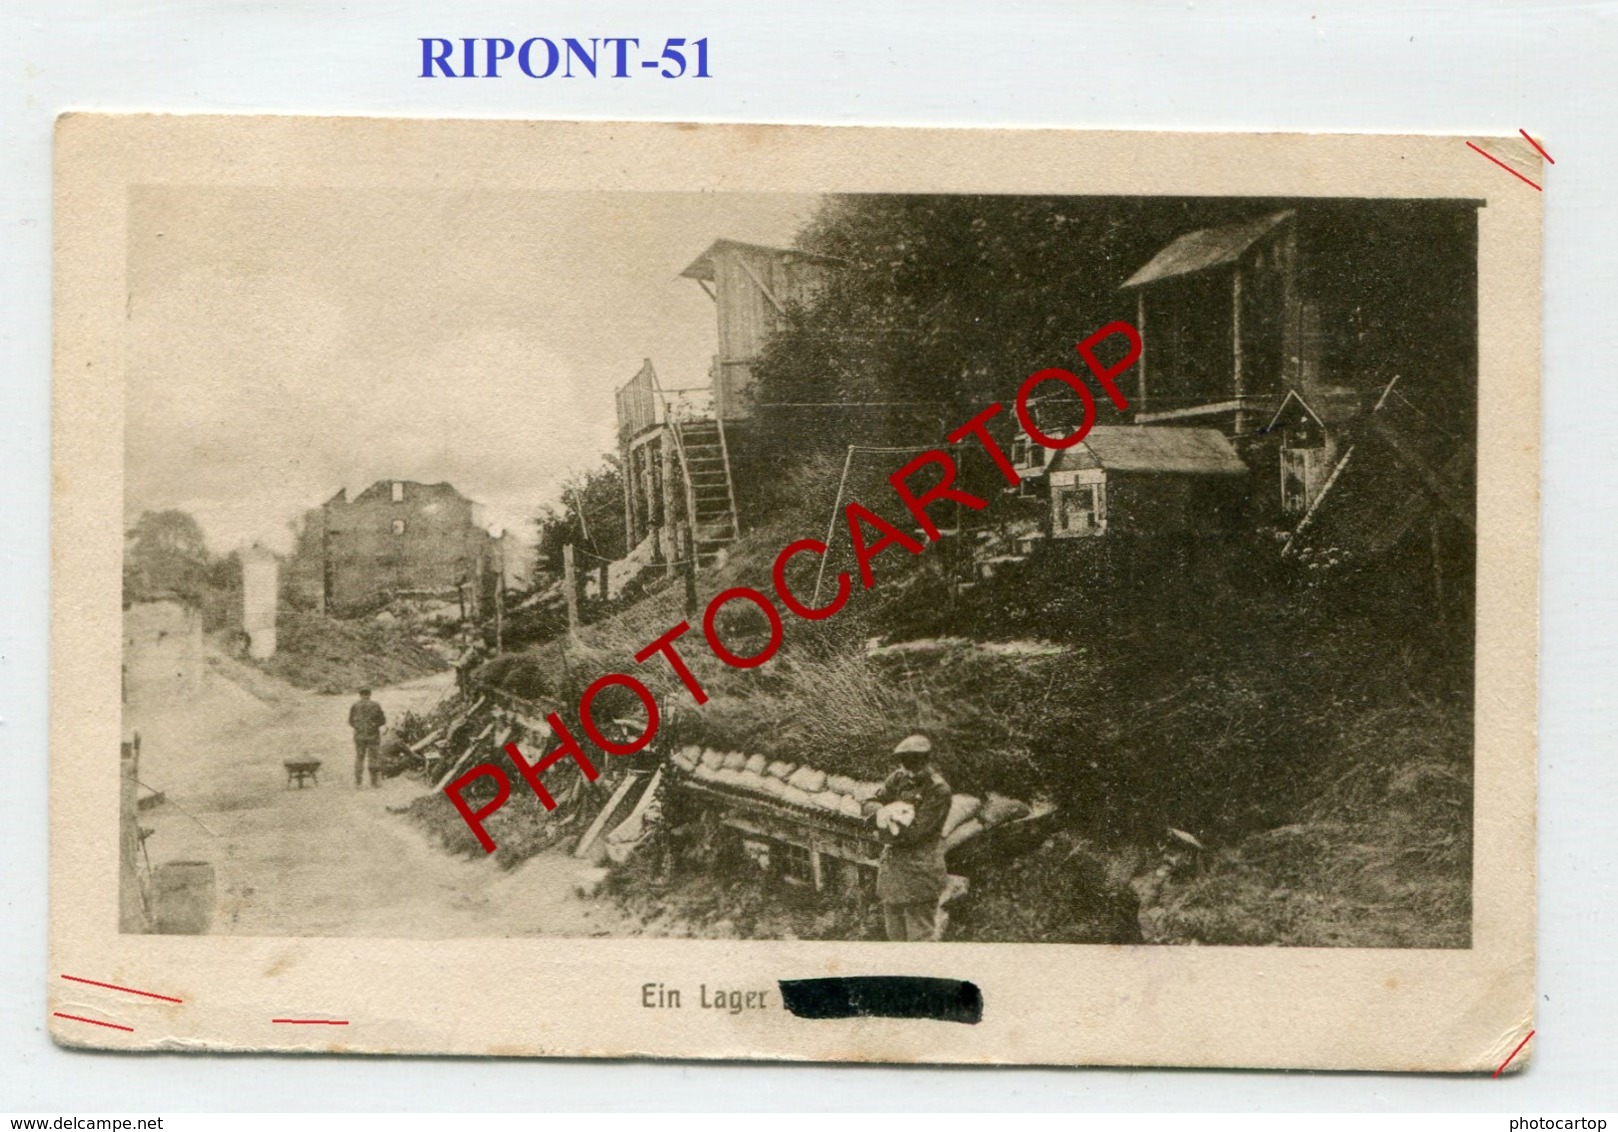 RIPONT-Lager-Positions-CARTE Imprimee Allemande-Guerre14-18-1WK-France-51-Militaria-Feldpost - Ville-sur-Tourbe